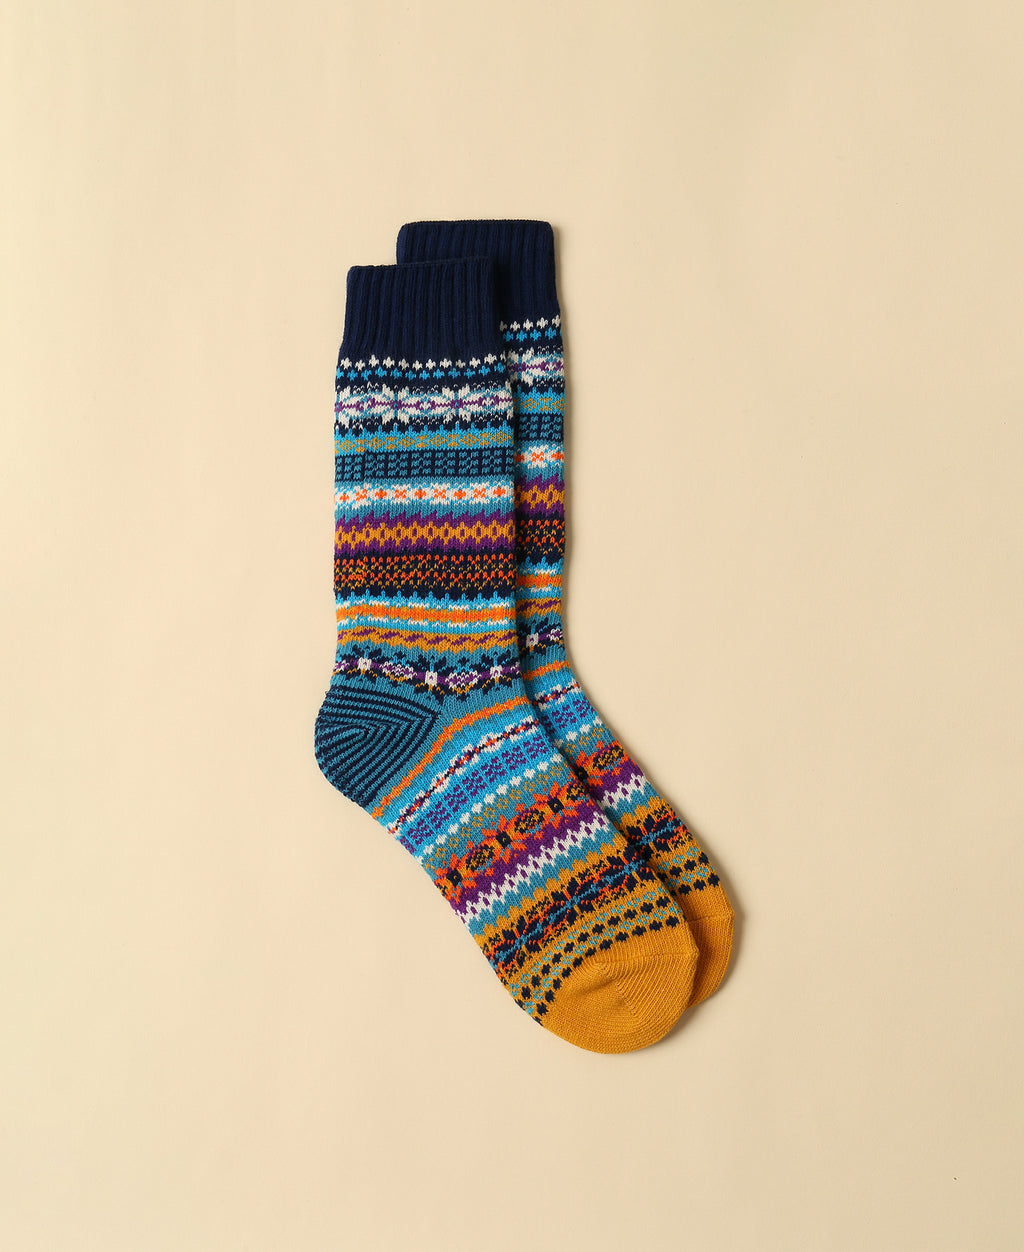  Marvel Men's Socks, Knitted Men's Novelty Socks with Non-Slip  Sole, Fleece Novelty Socks for Men & Teens, Logo, Black, 1 Size Fits All,  Fun Gifts for Men : Clothing, Shoes 